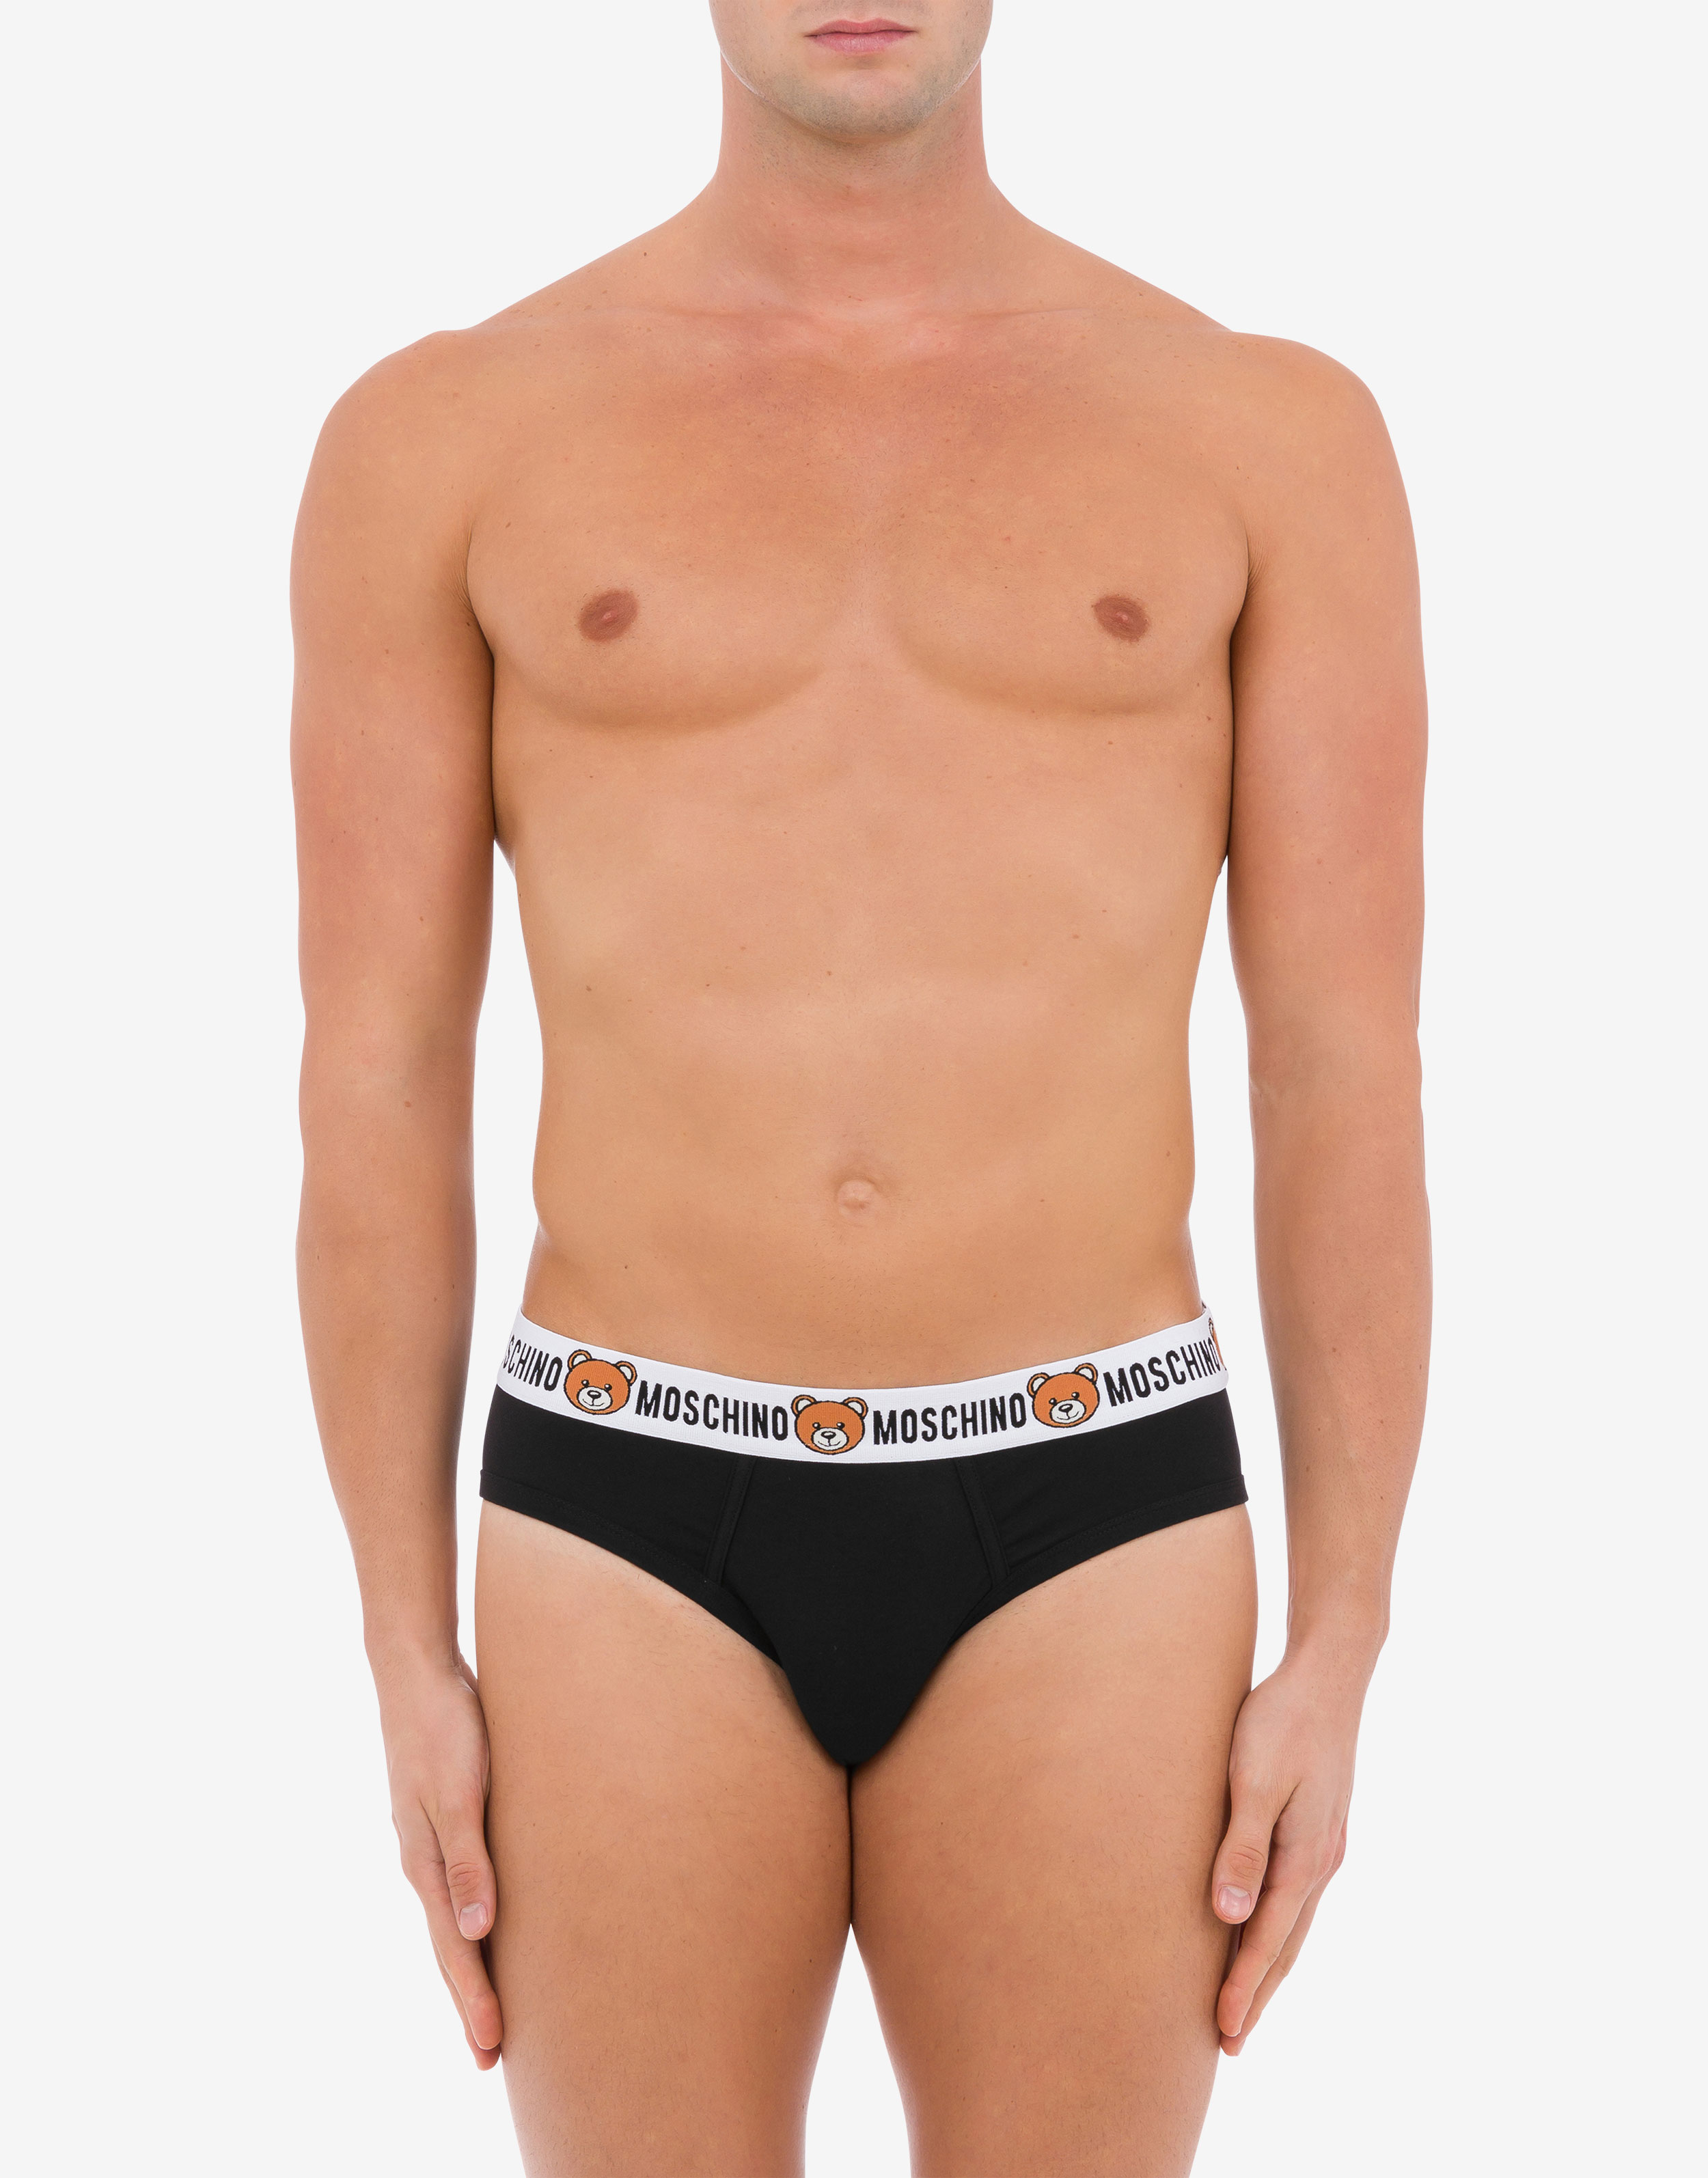 Moschino Underwear underwear for man